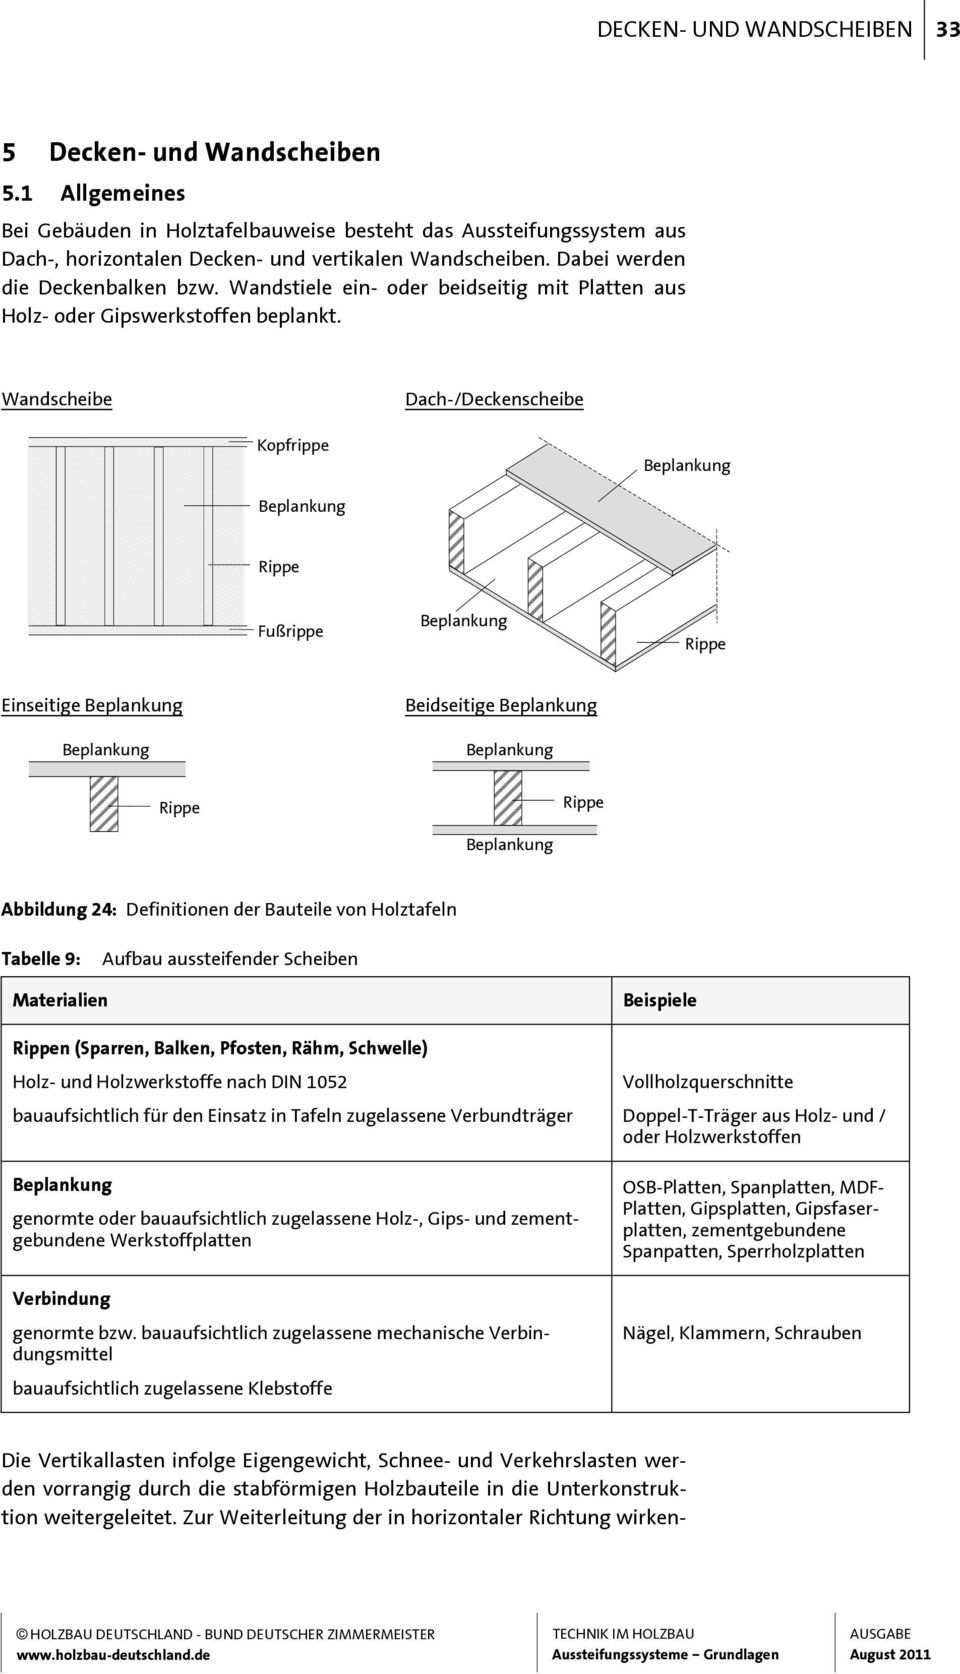 Vorwort Vorwort 1 Mit Der Neuen Reihe Technik Im Holzbau Setzt Holzbau Deutschland Pdf Free Download